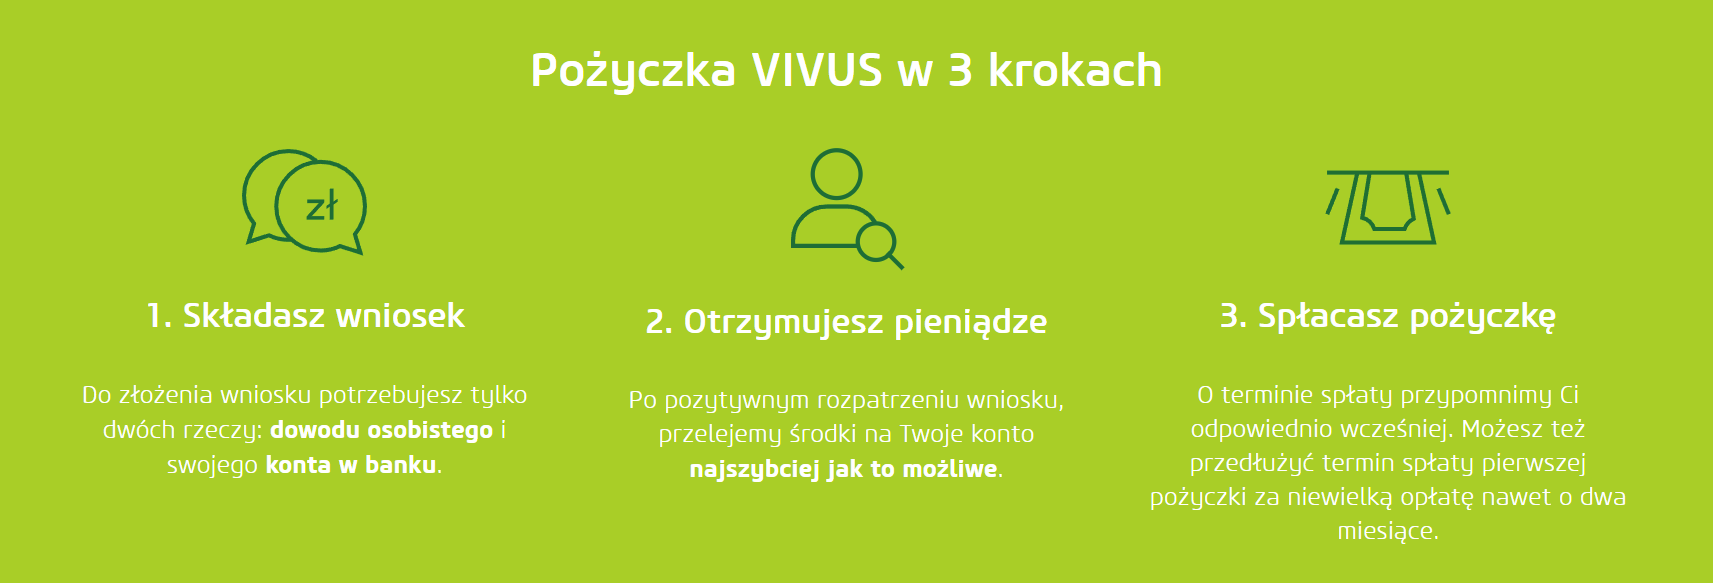 Fot. Screen / vivus.pl 